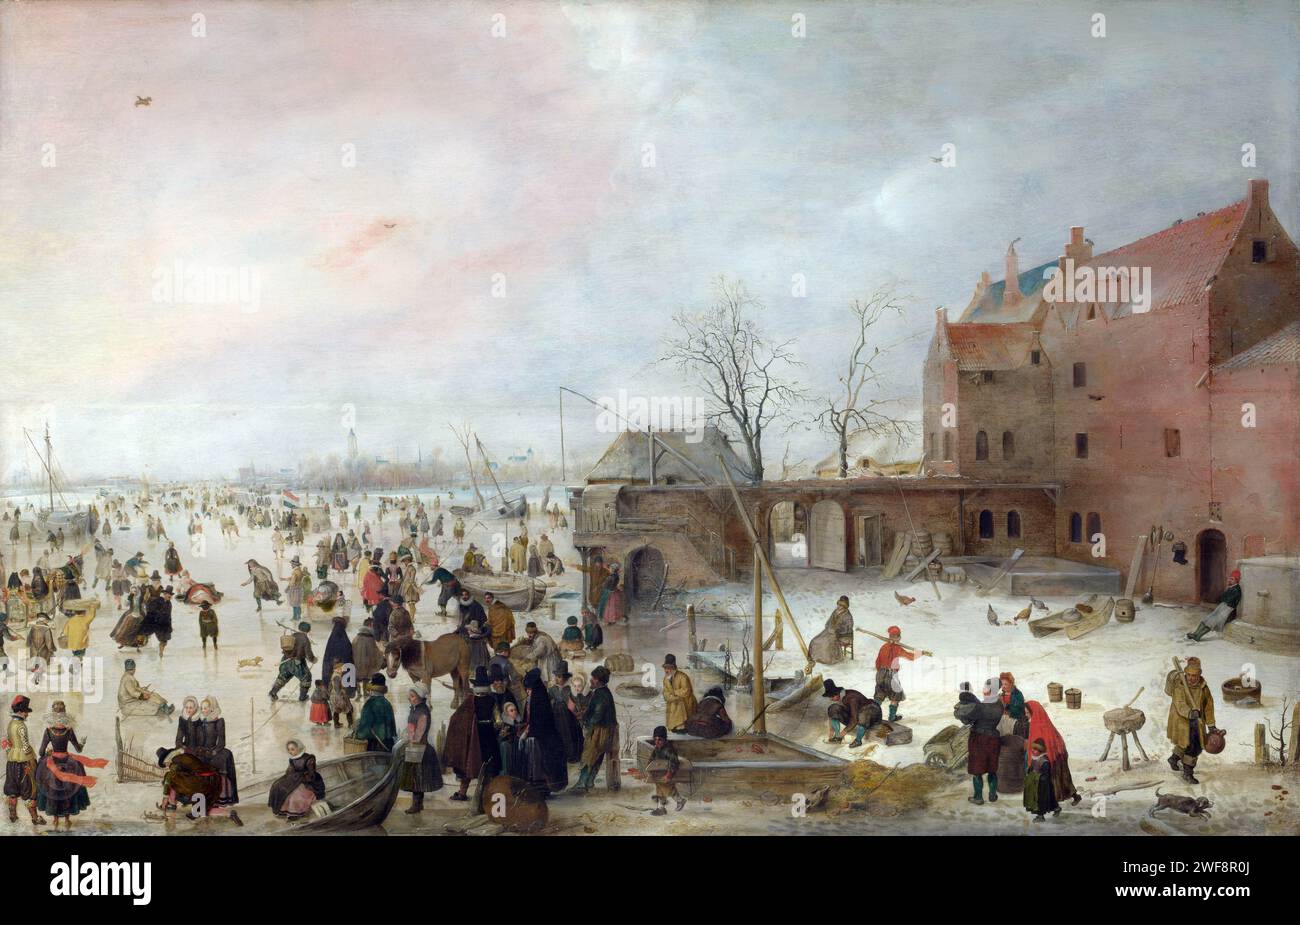 National Gallery UK – Hendrick Avercamp - Une scène sur la glace près d'une ville с1615 Banque D'Images